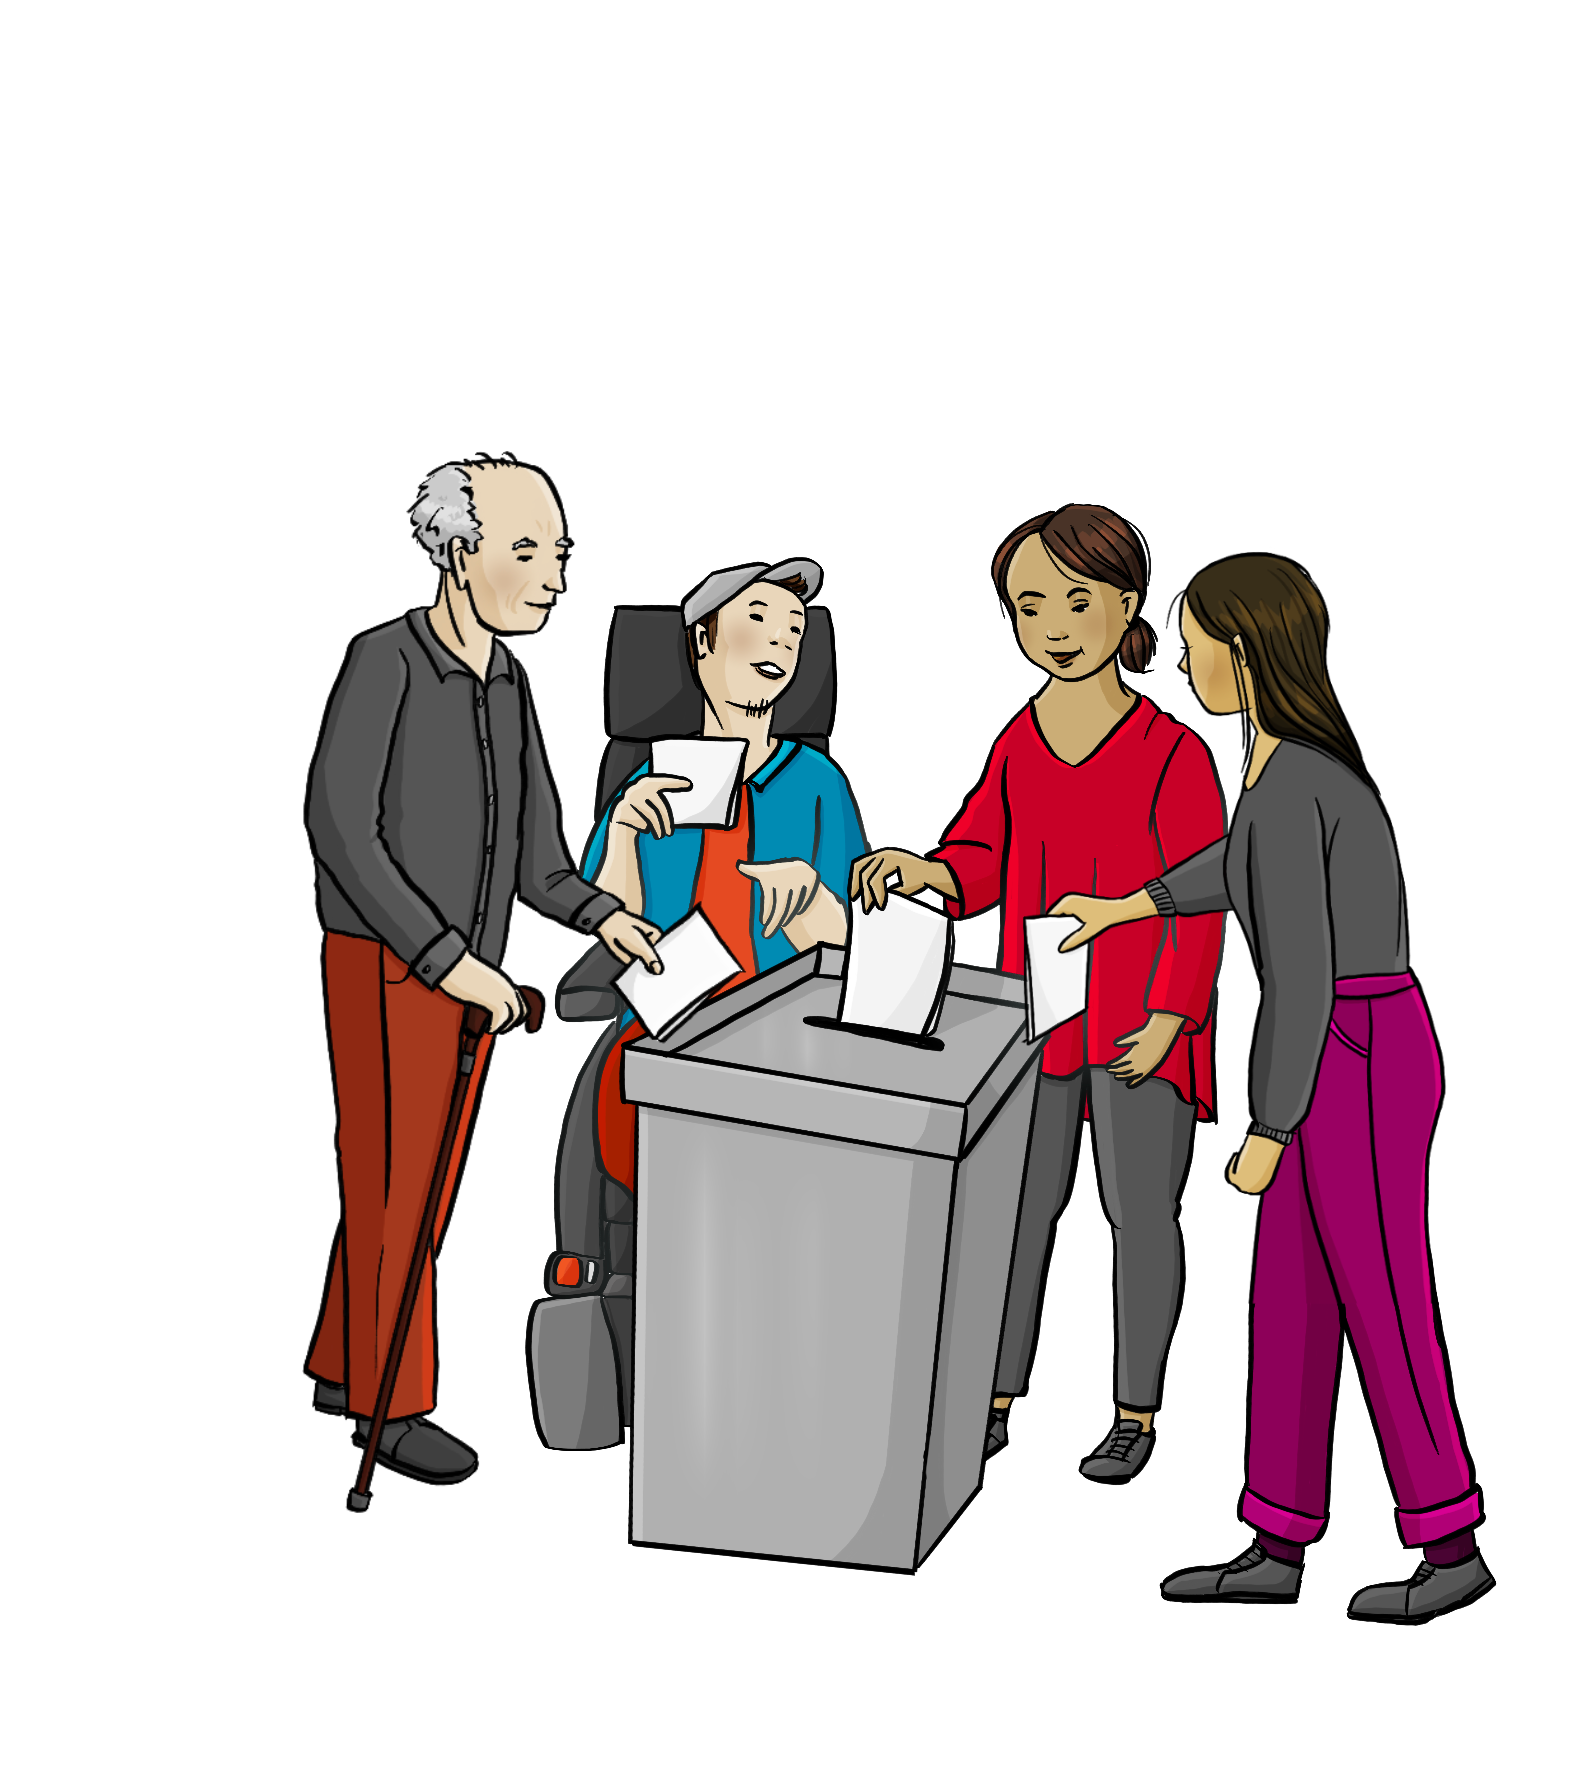 Verschiedene Menschen stehen um eine Wahlurne herum: Ein älterer Mann, ein Mann im Rollstuhl und zwei Frauen. Alle halten einen Stimmzettel in der Hand und halten ihn in Richtung der Wahlurne.